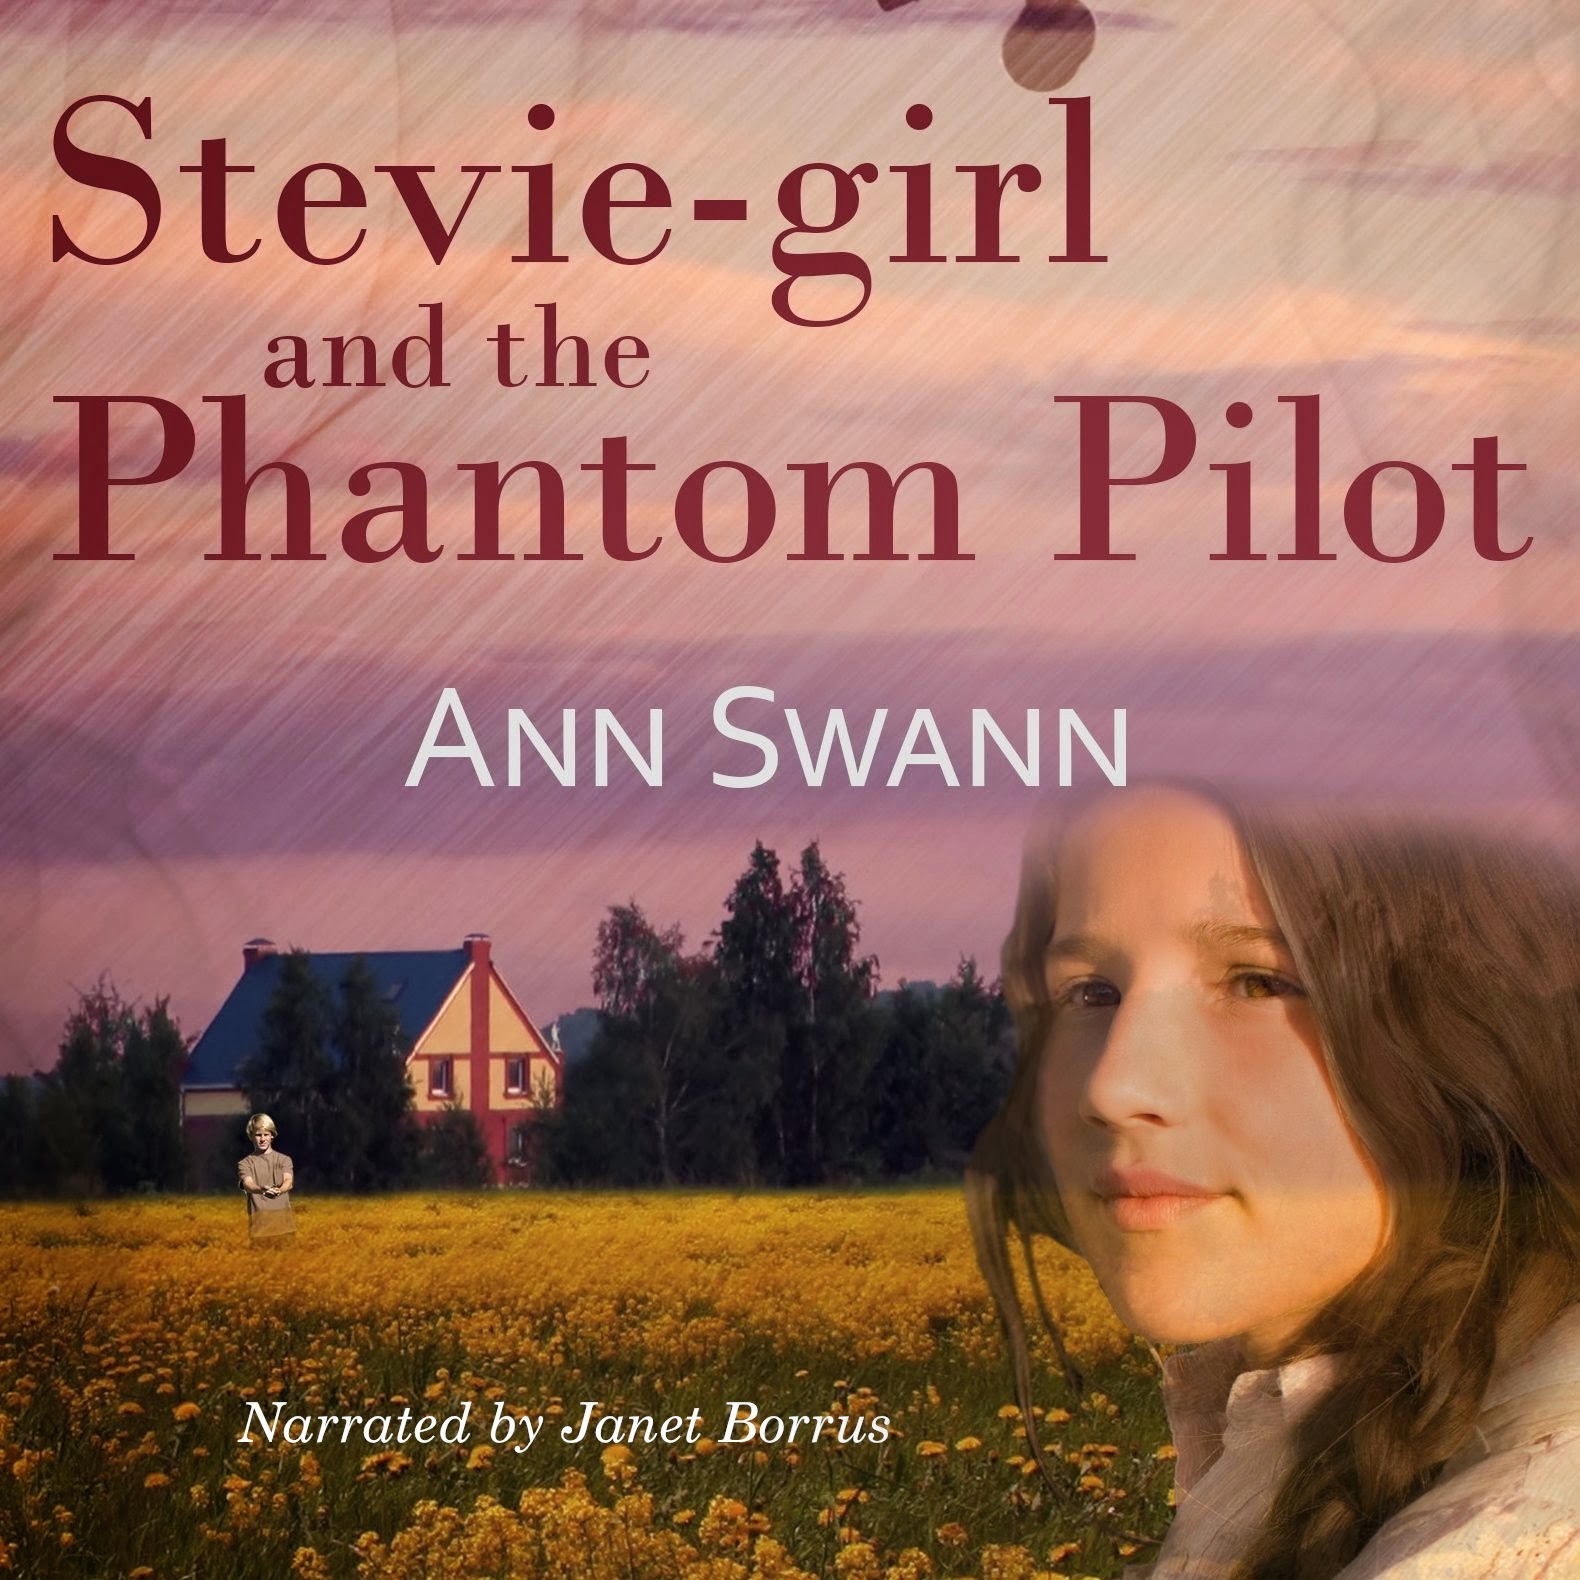 Stevie-girl and the Phantom Pilot